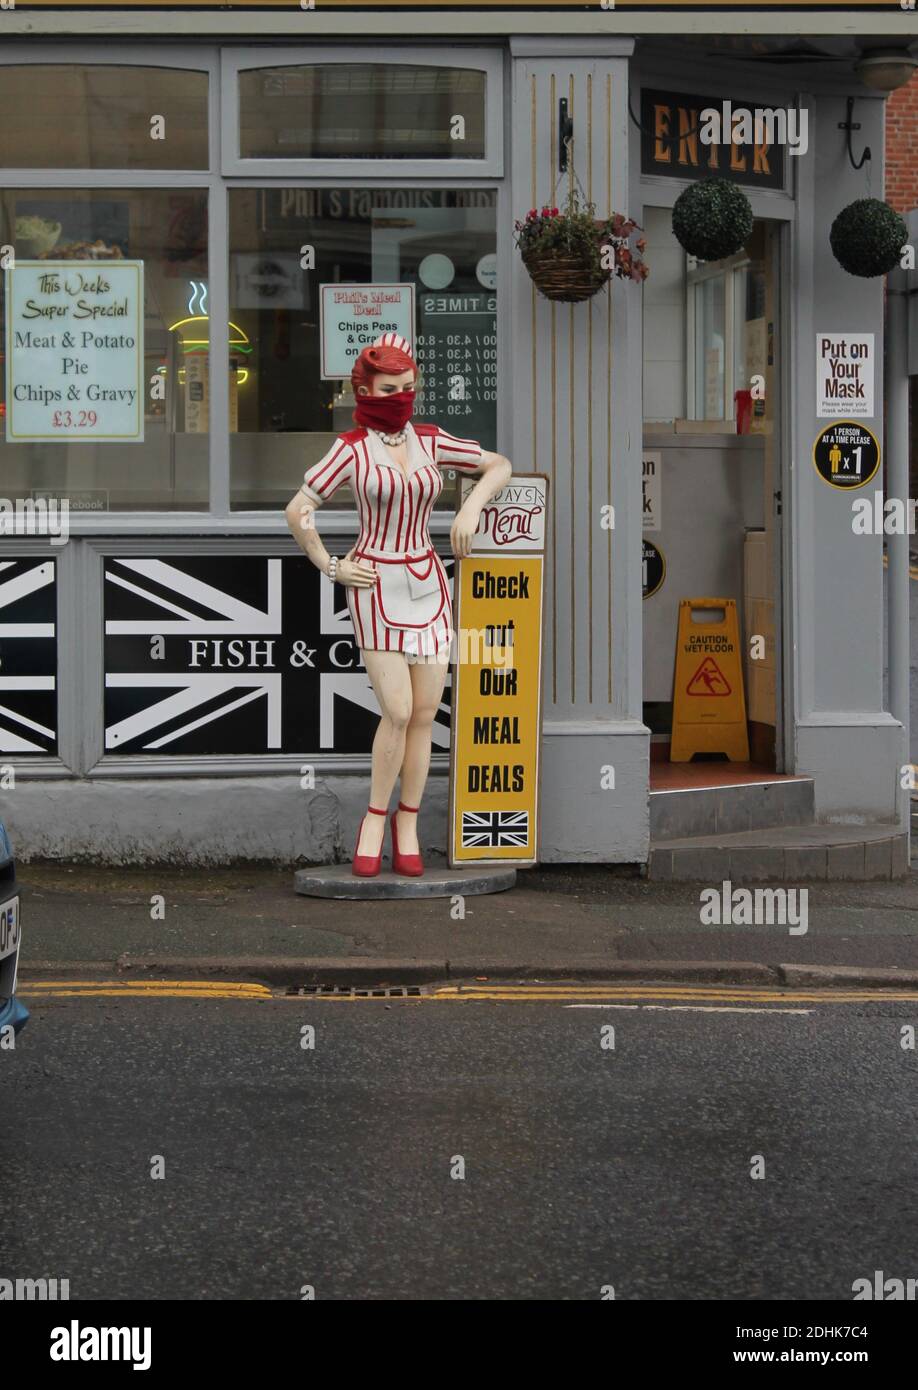 Manichetta femminile vestita in uniforme rossa e bianca da cameriera una sciarpa come un facemask all'esterno di un negozio di chip Foto Stock